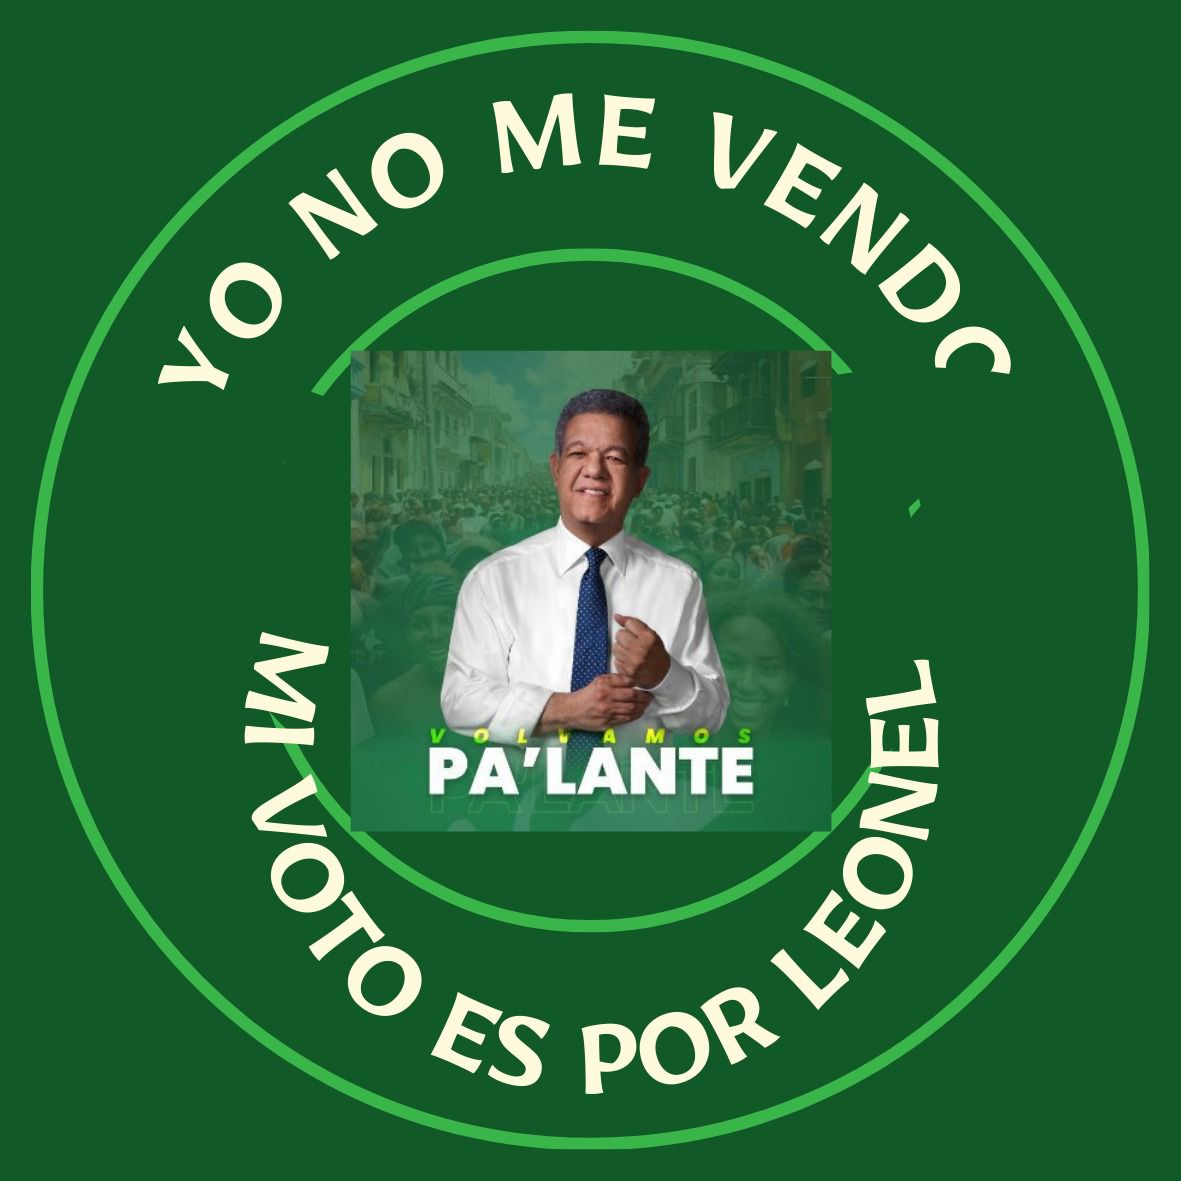 @LeonelFernandez #Vota3